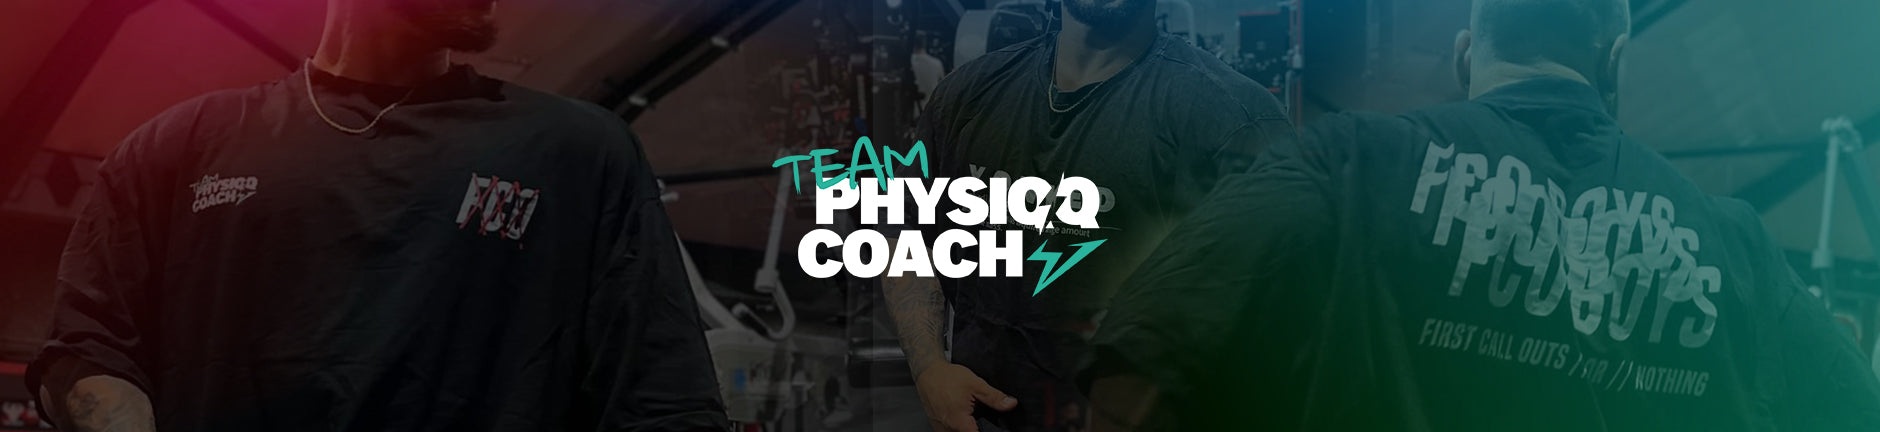 Team PhysiqqCoach